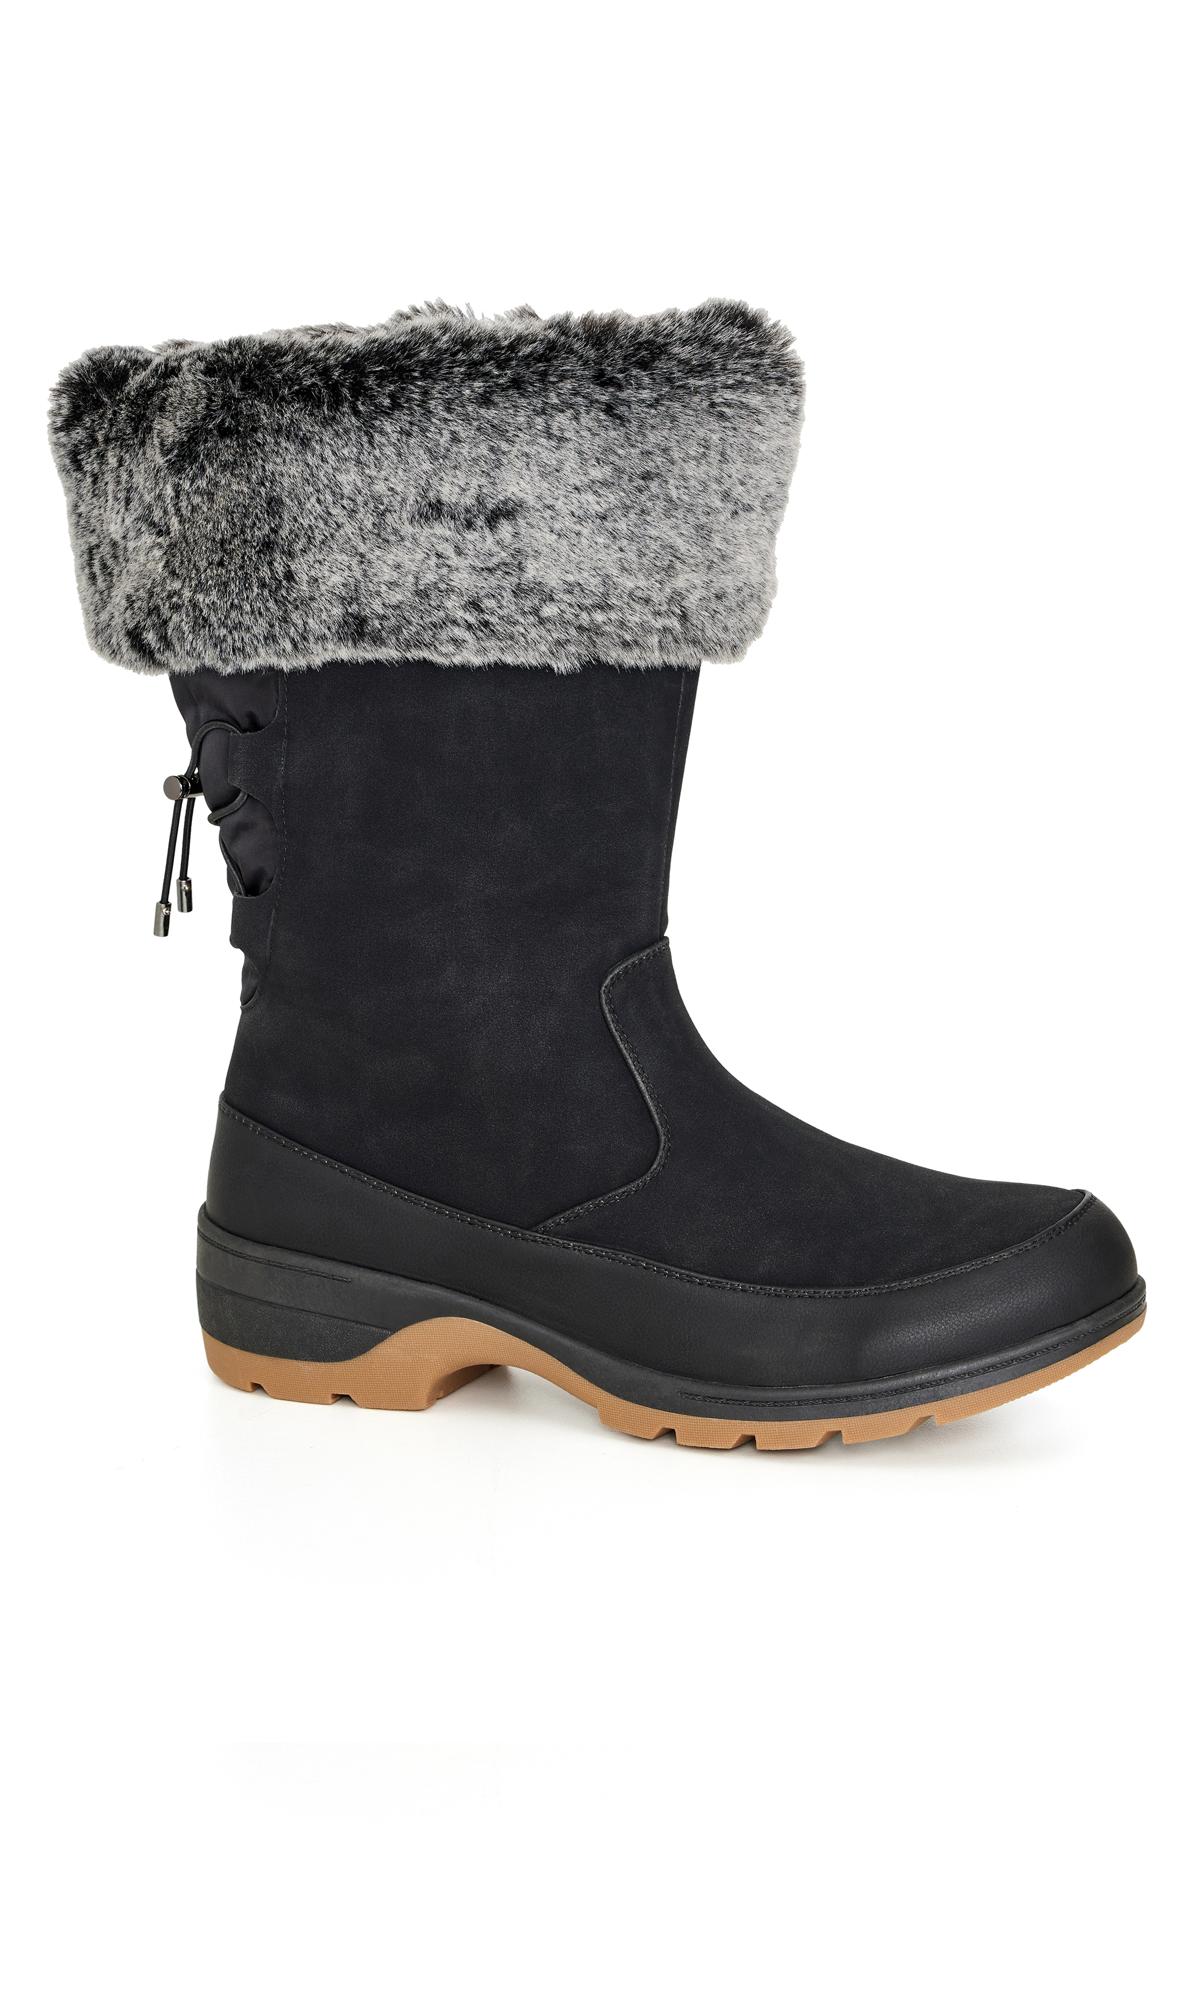 Evans WIDE FIT Black Faux Fur Lined Snow Boots 2